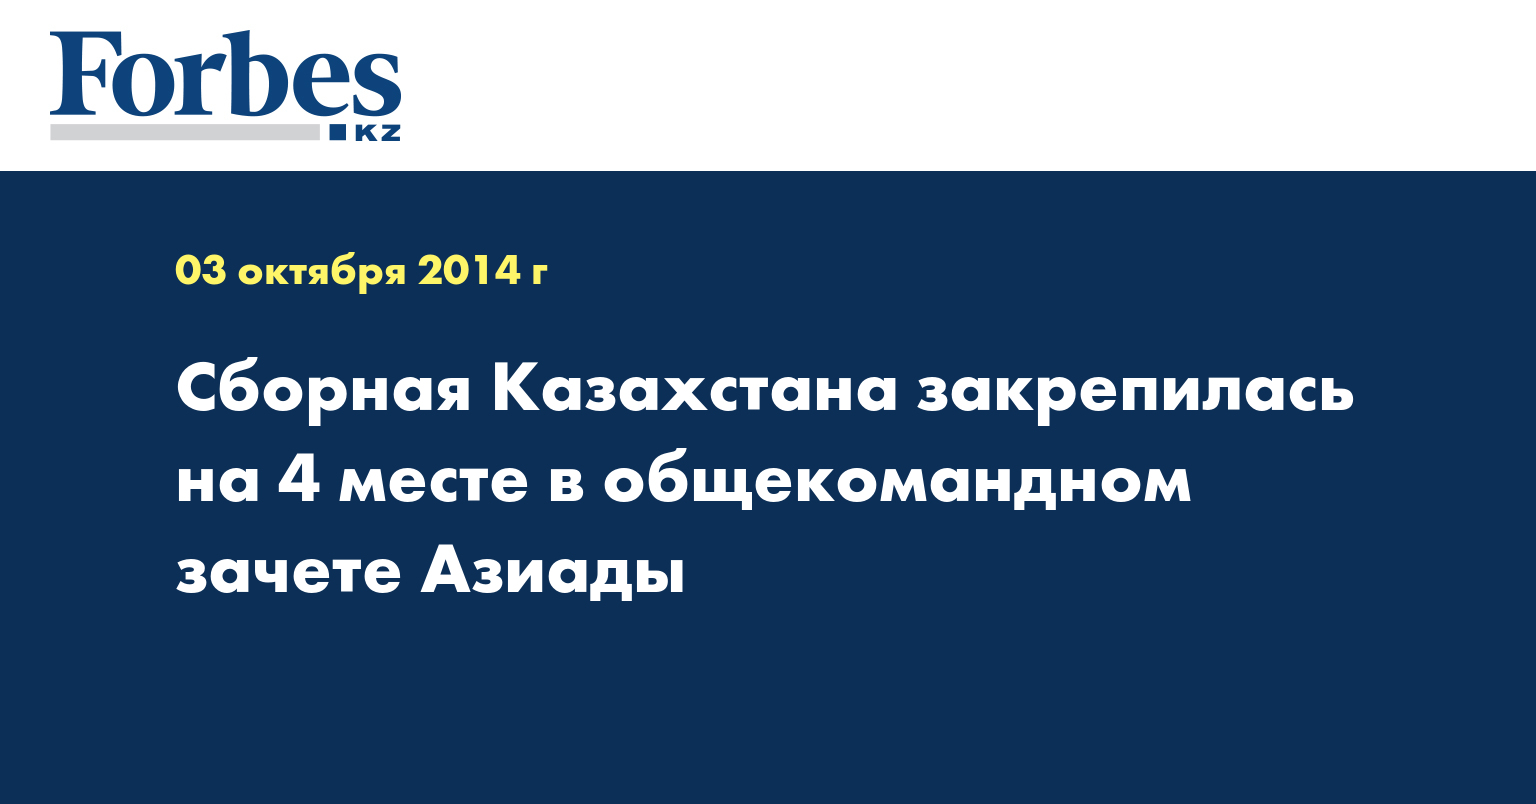 Сборная Казахстана закрепилась на 4 месте в общекомандном зачете Азиады